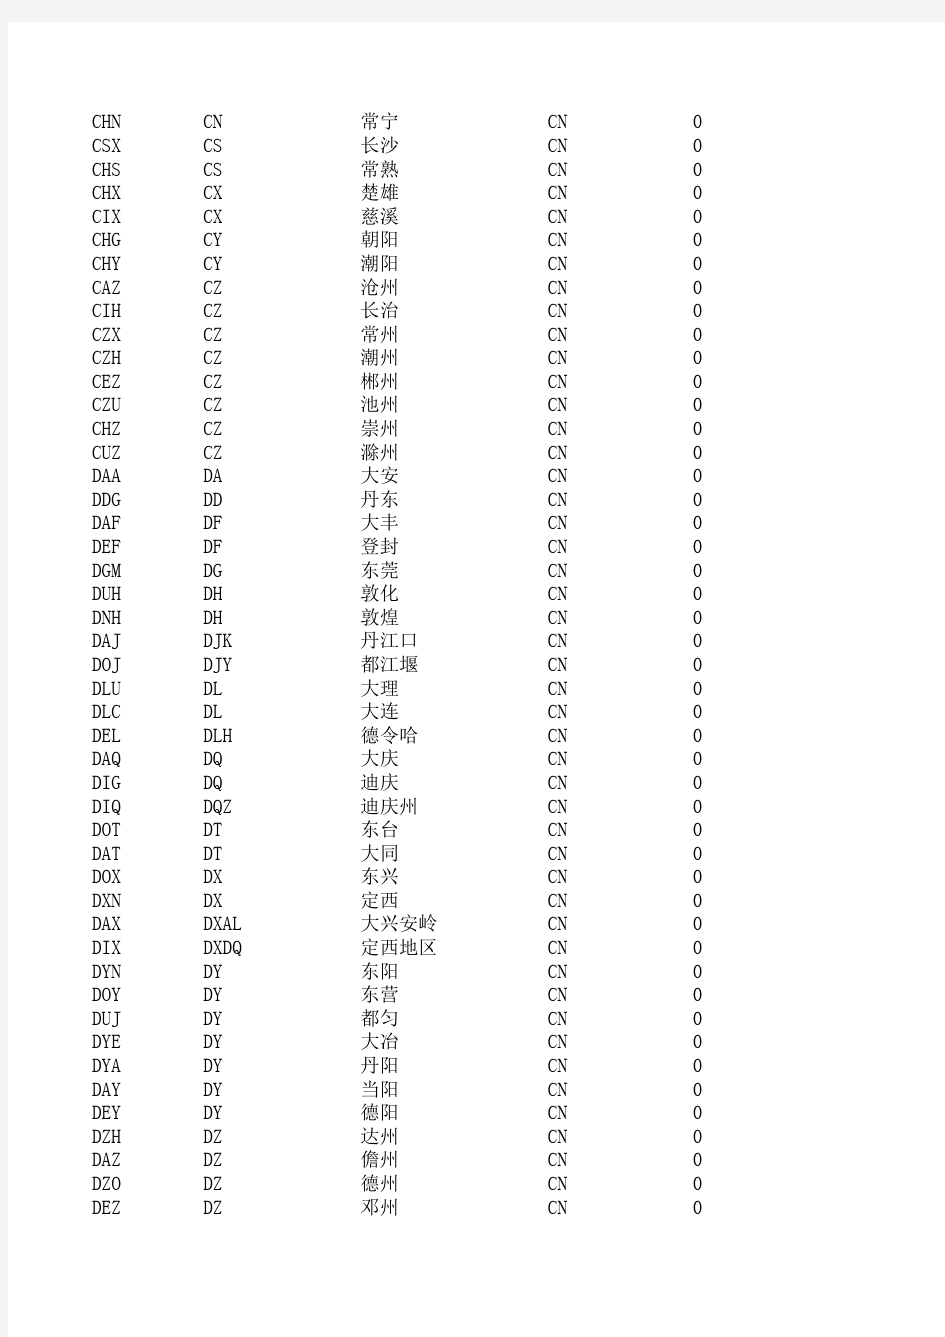 中国城市三字代码及所属省份表